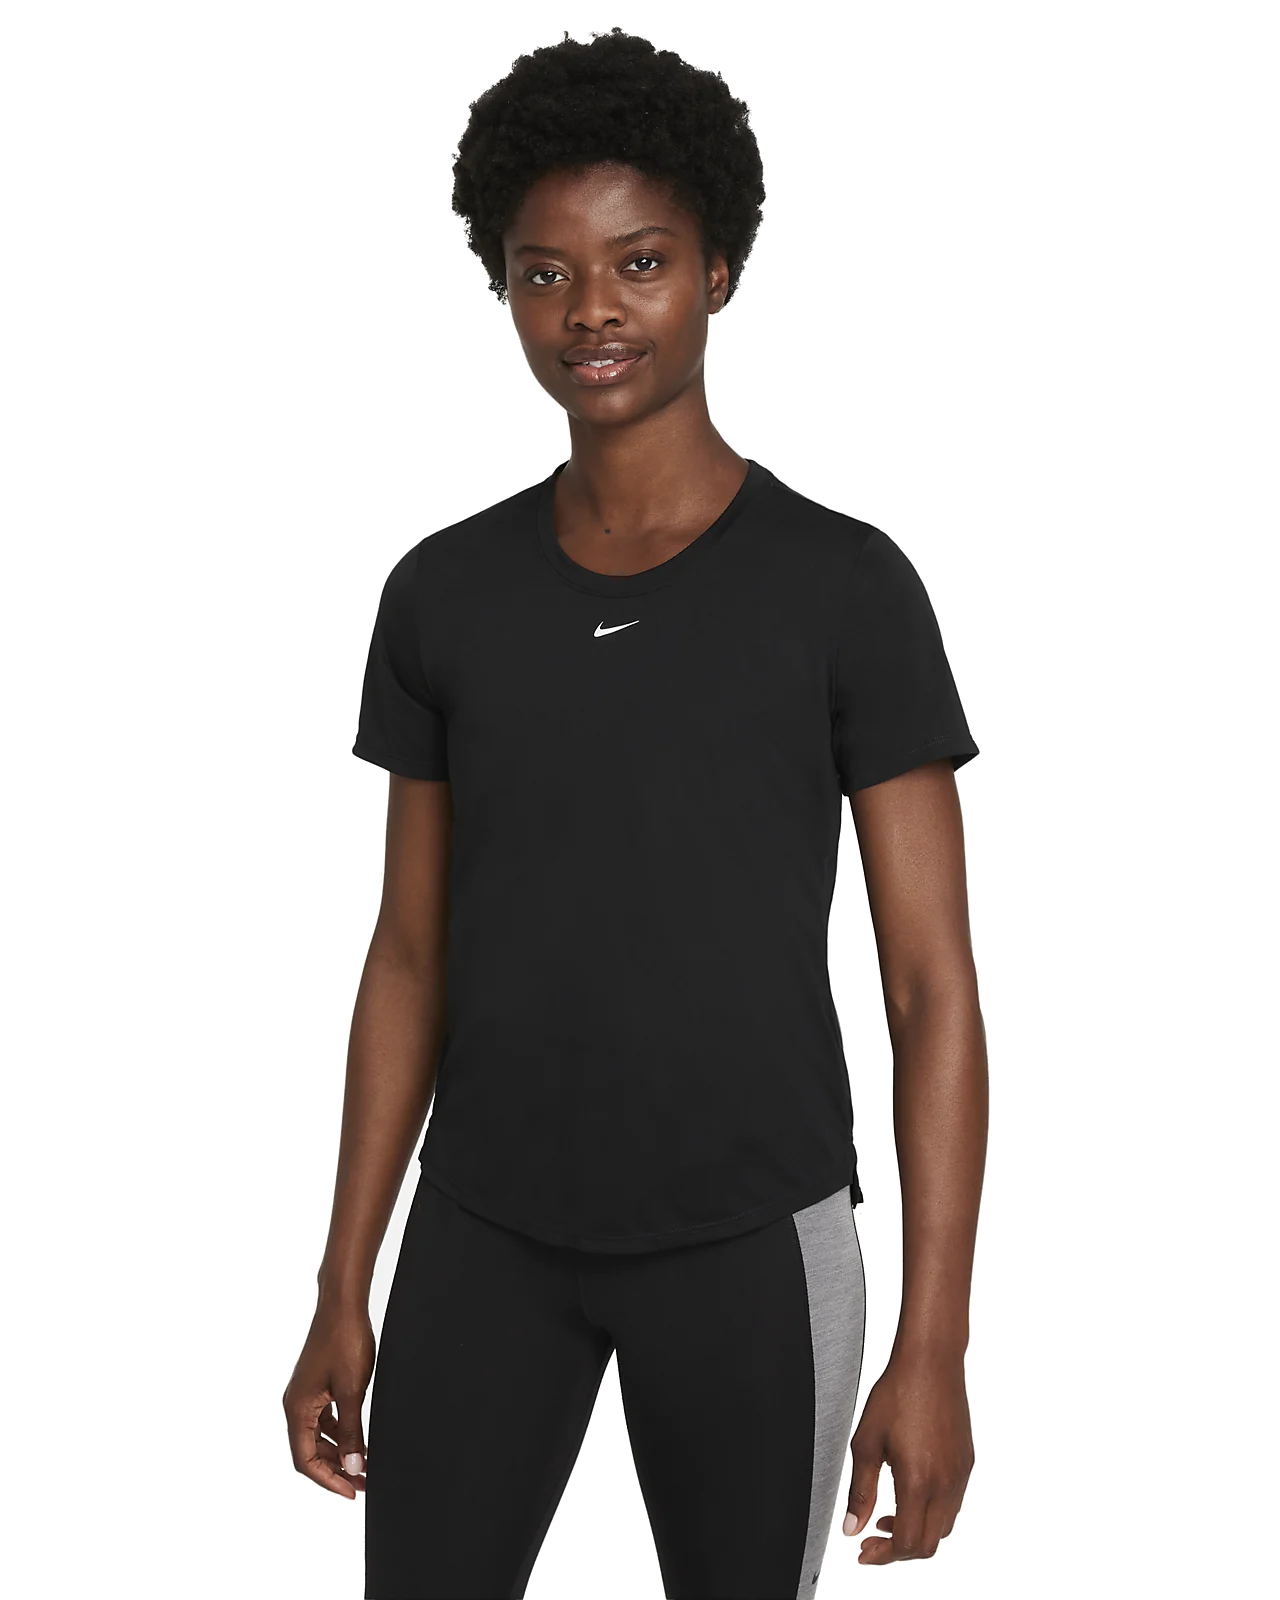 Ladies Nike Dri-Fit One Short Sleeve Top (Black)